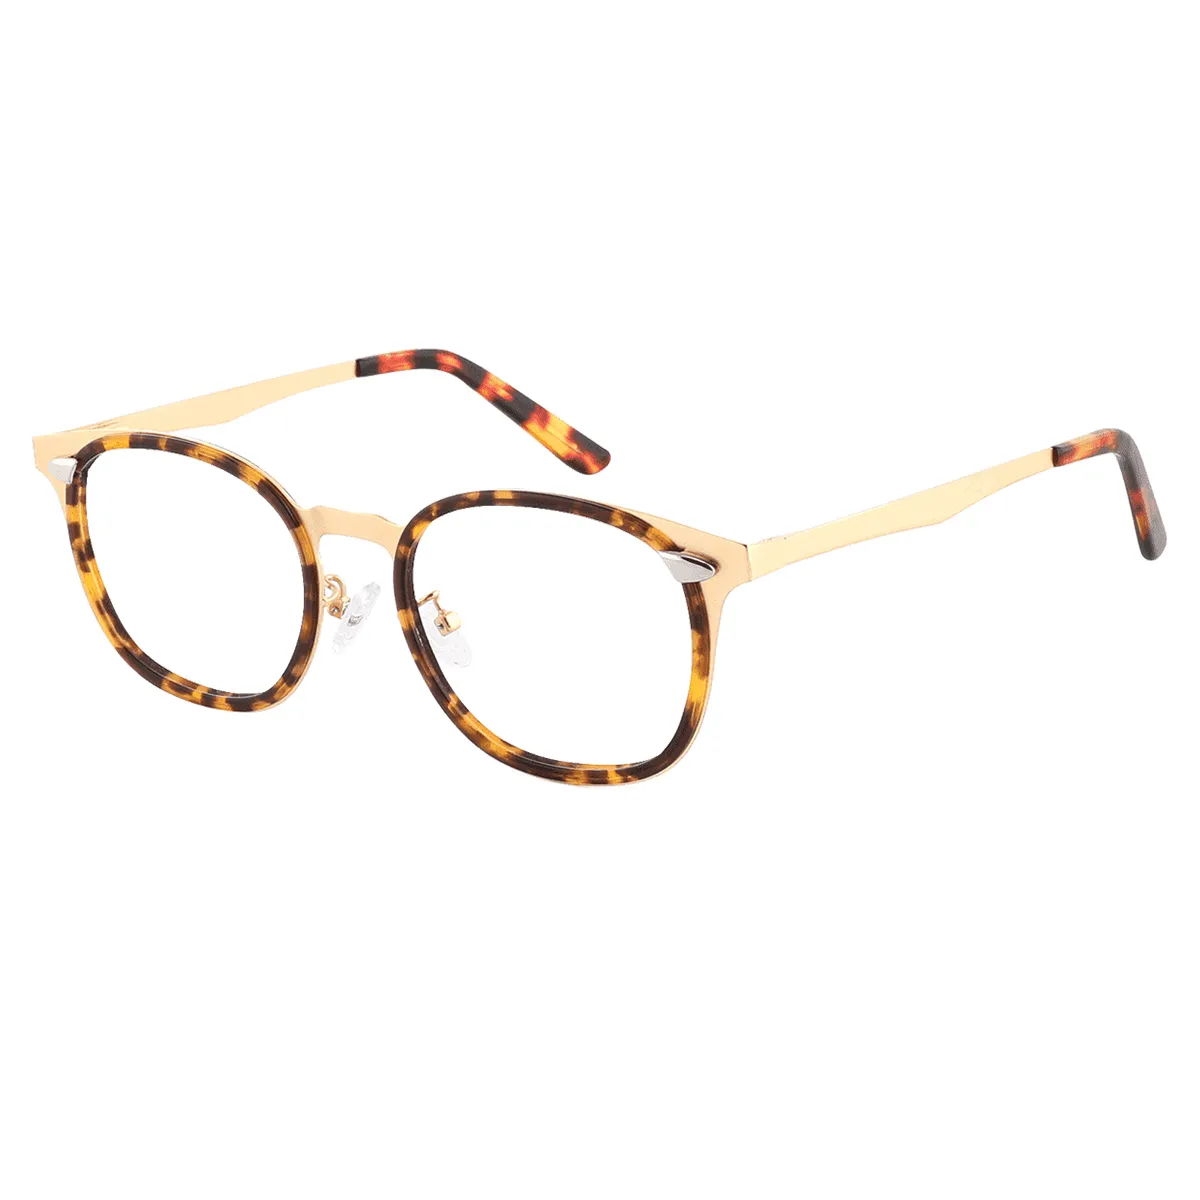 Lind - Oval Tortoiseshell Glasses for Men & Women